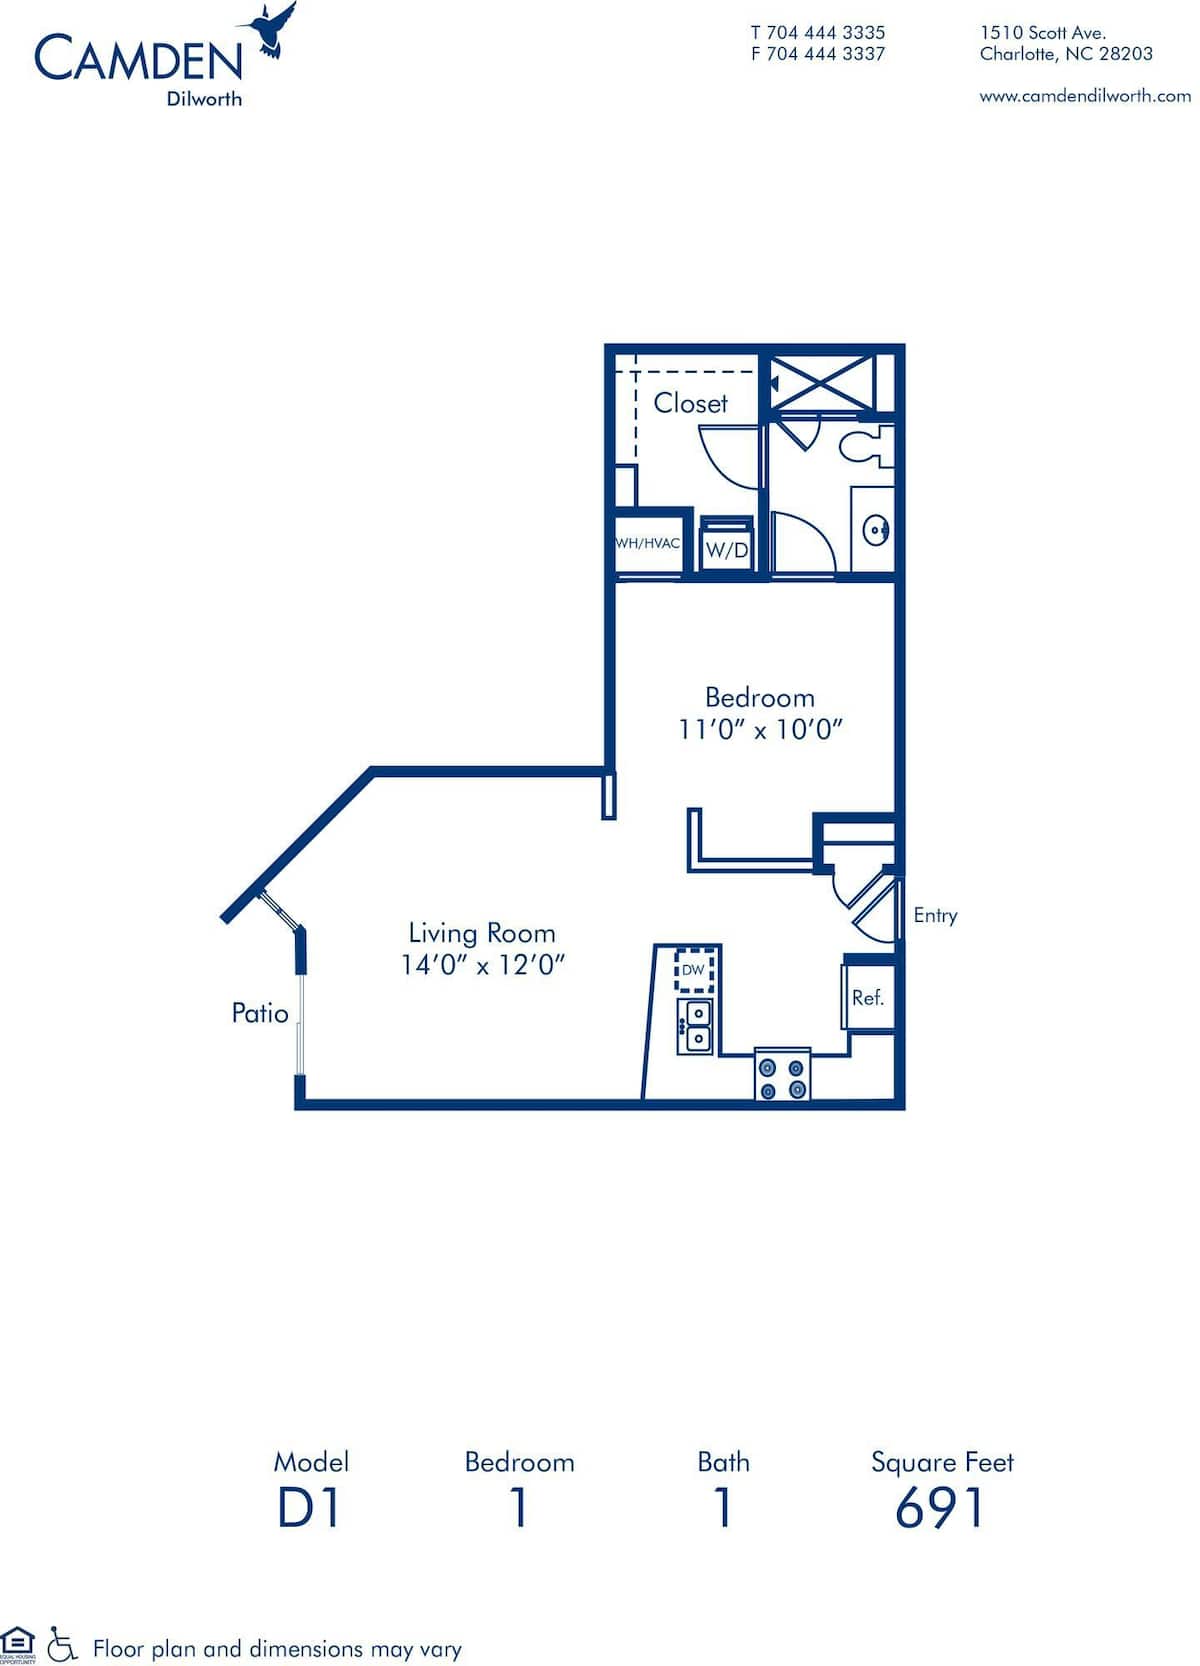 Floorplan diagram for D1, showing 1 bedroom